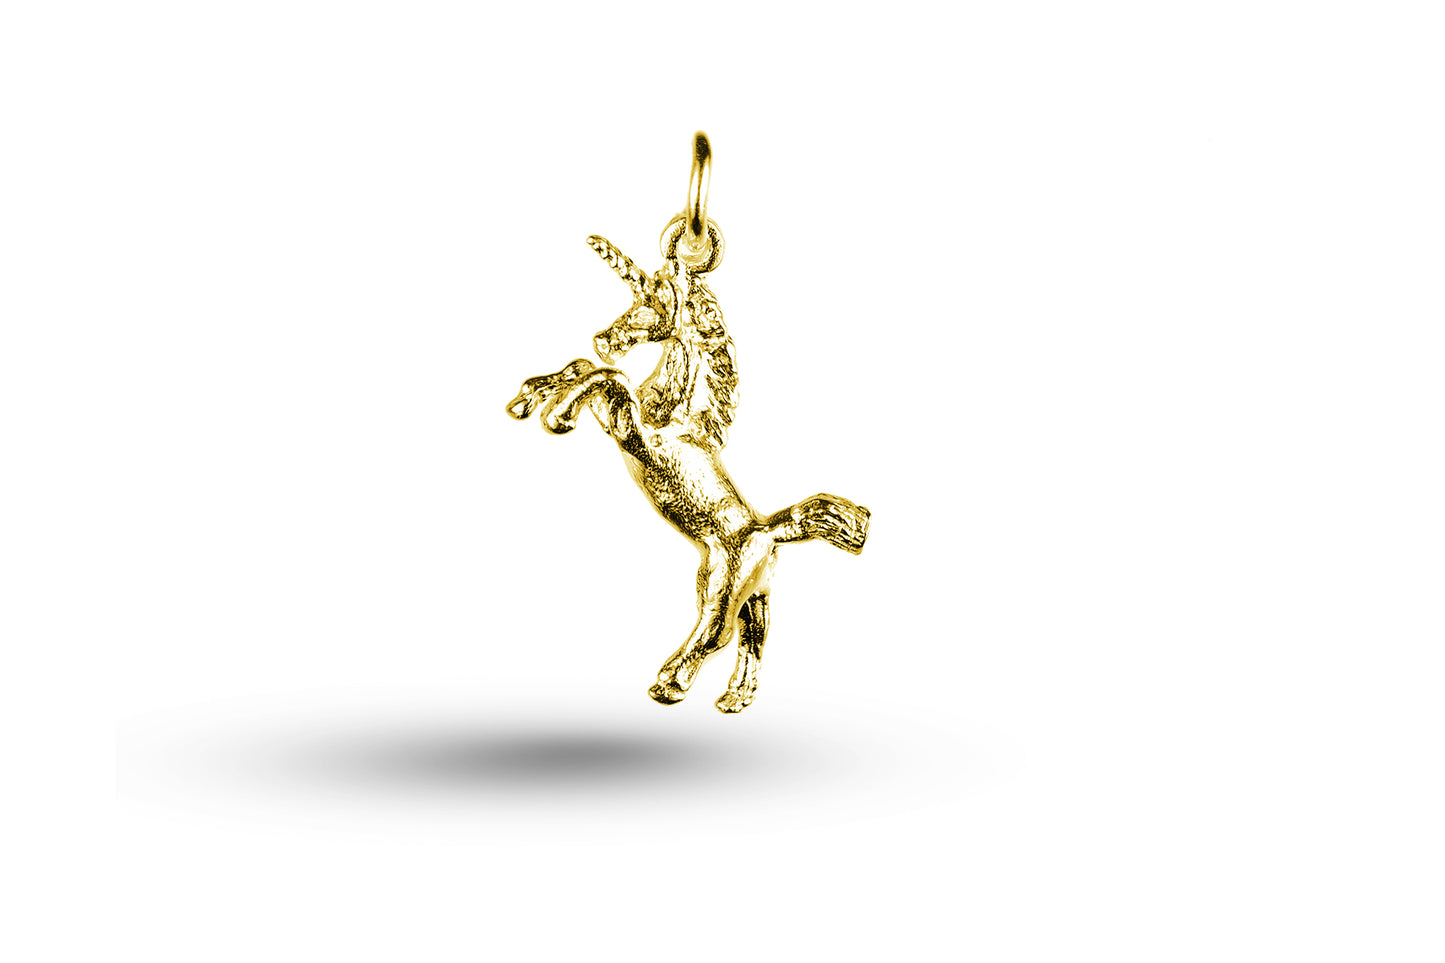 Yellow gold Rearing Unicorn charm.